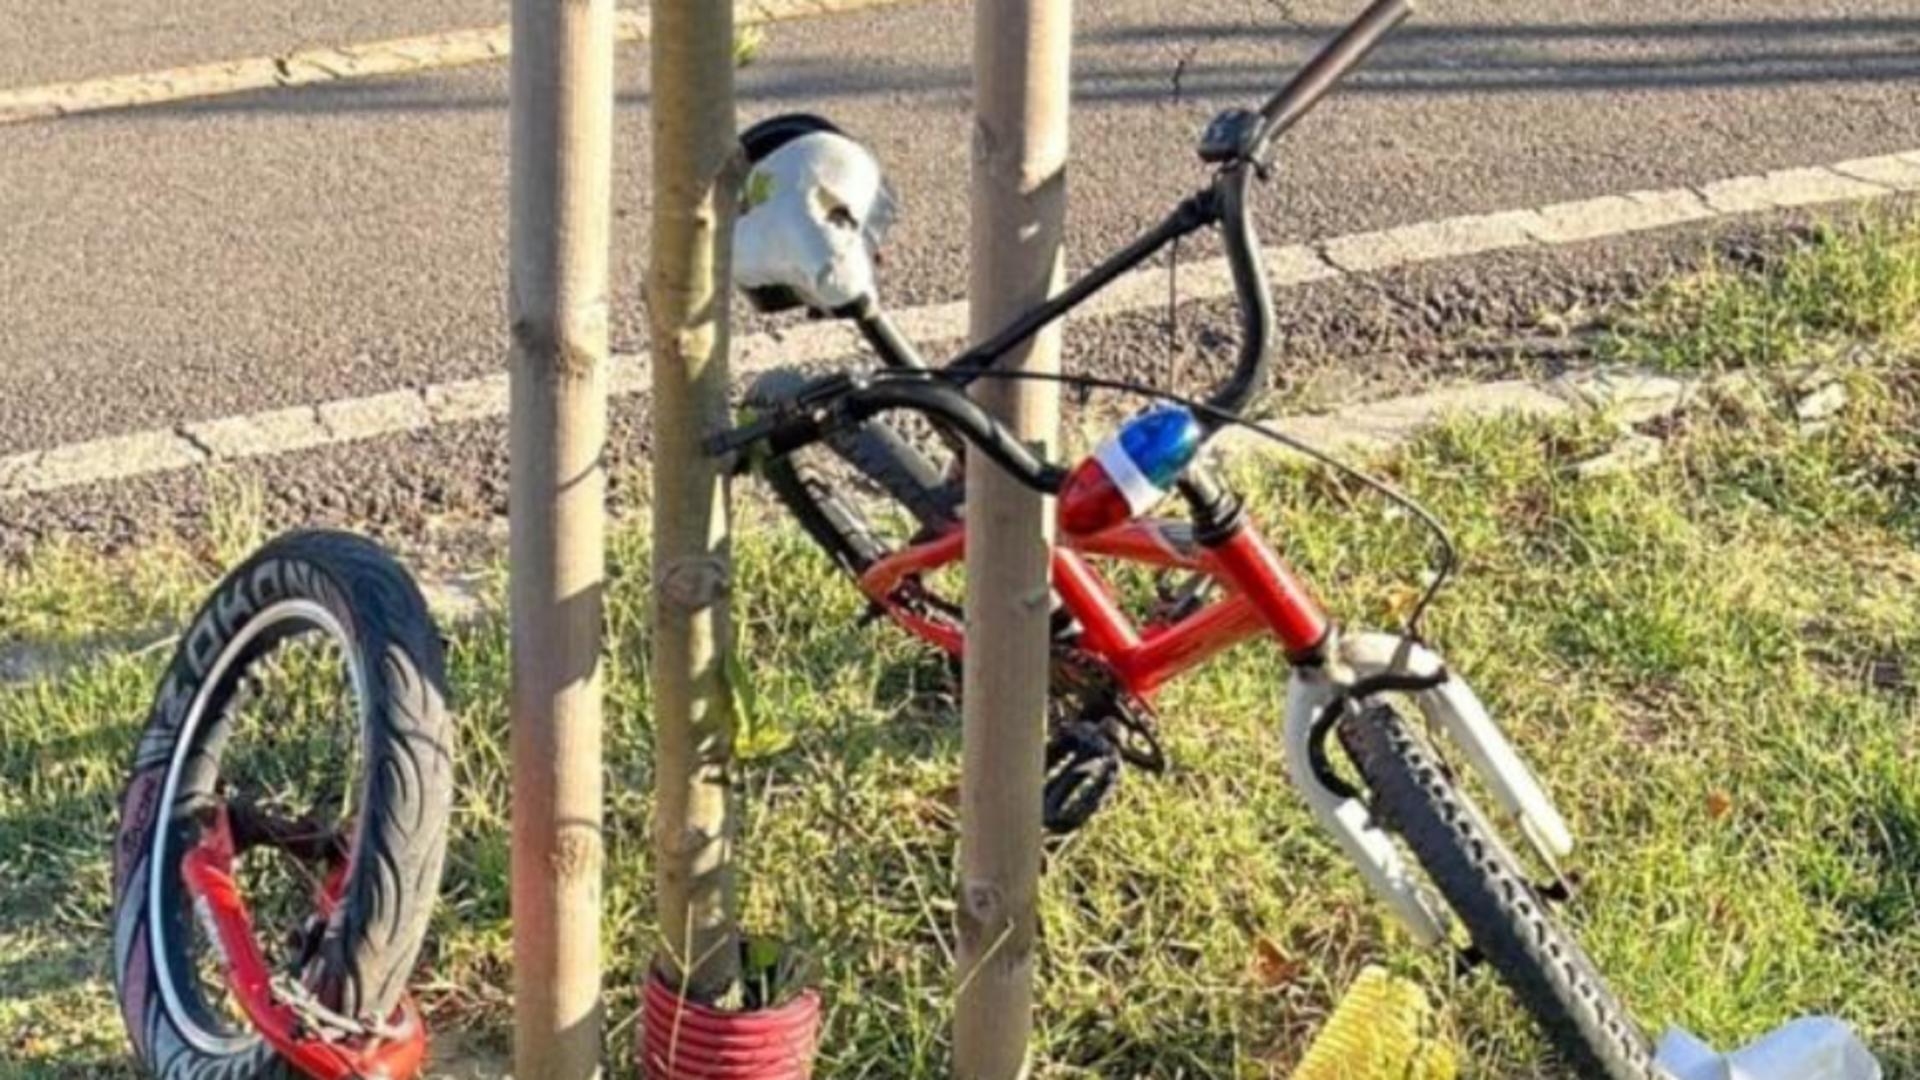 Moarte înfiorătoare în Galați: Un băiat de 9 ani, ucis de ghidonul bicicletei, în timp ce se plimba cu părinții - Detalii șocante